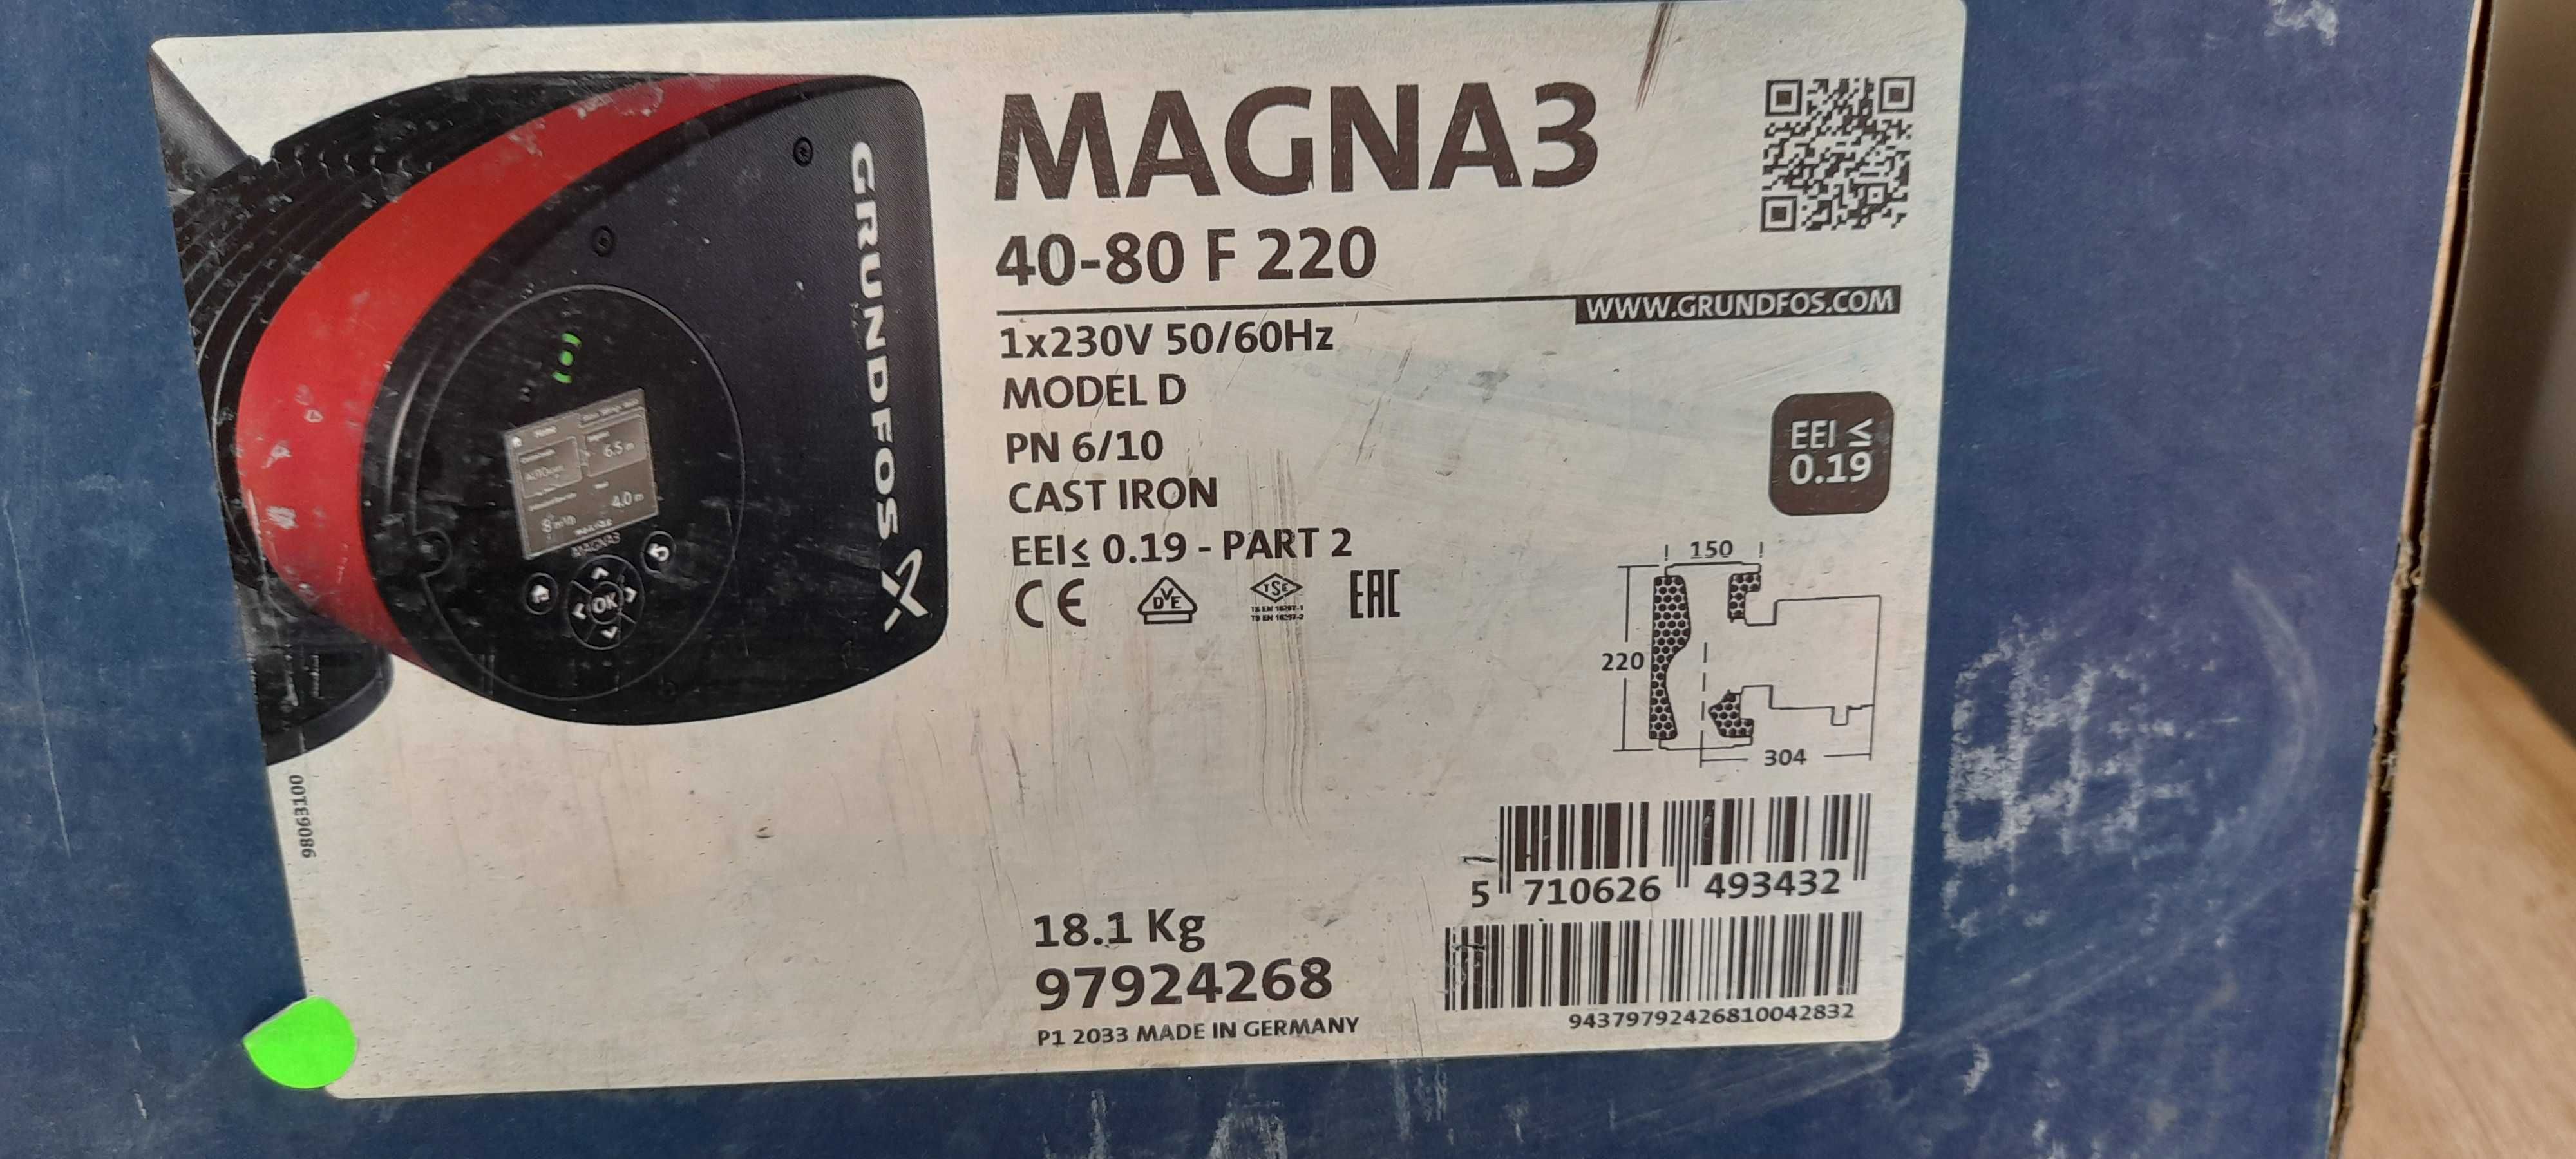 Grundfos nowa pompa obiegowa MAGNA3 40-80 F 220 230V PN6/10